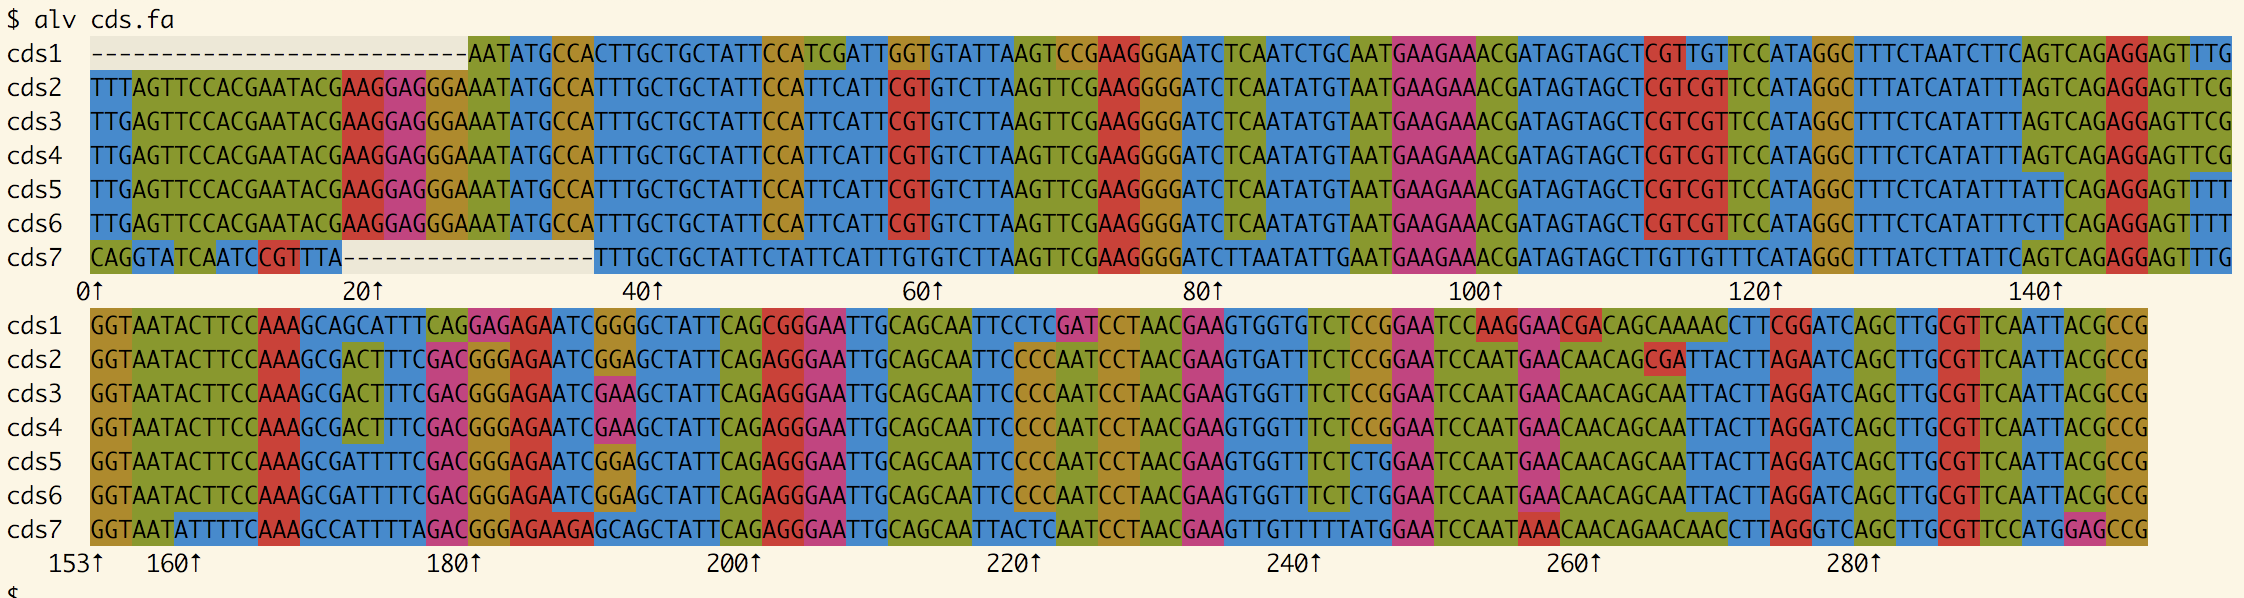 Seven coding DNA sequences